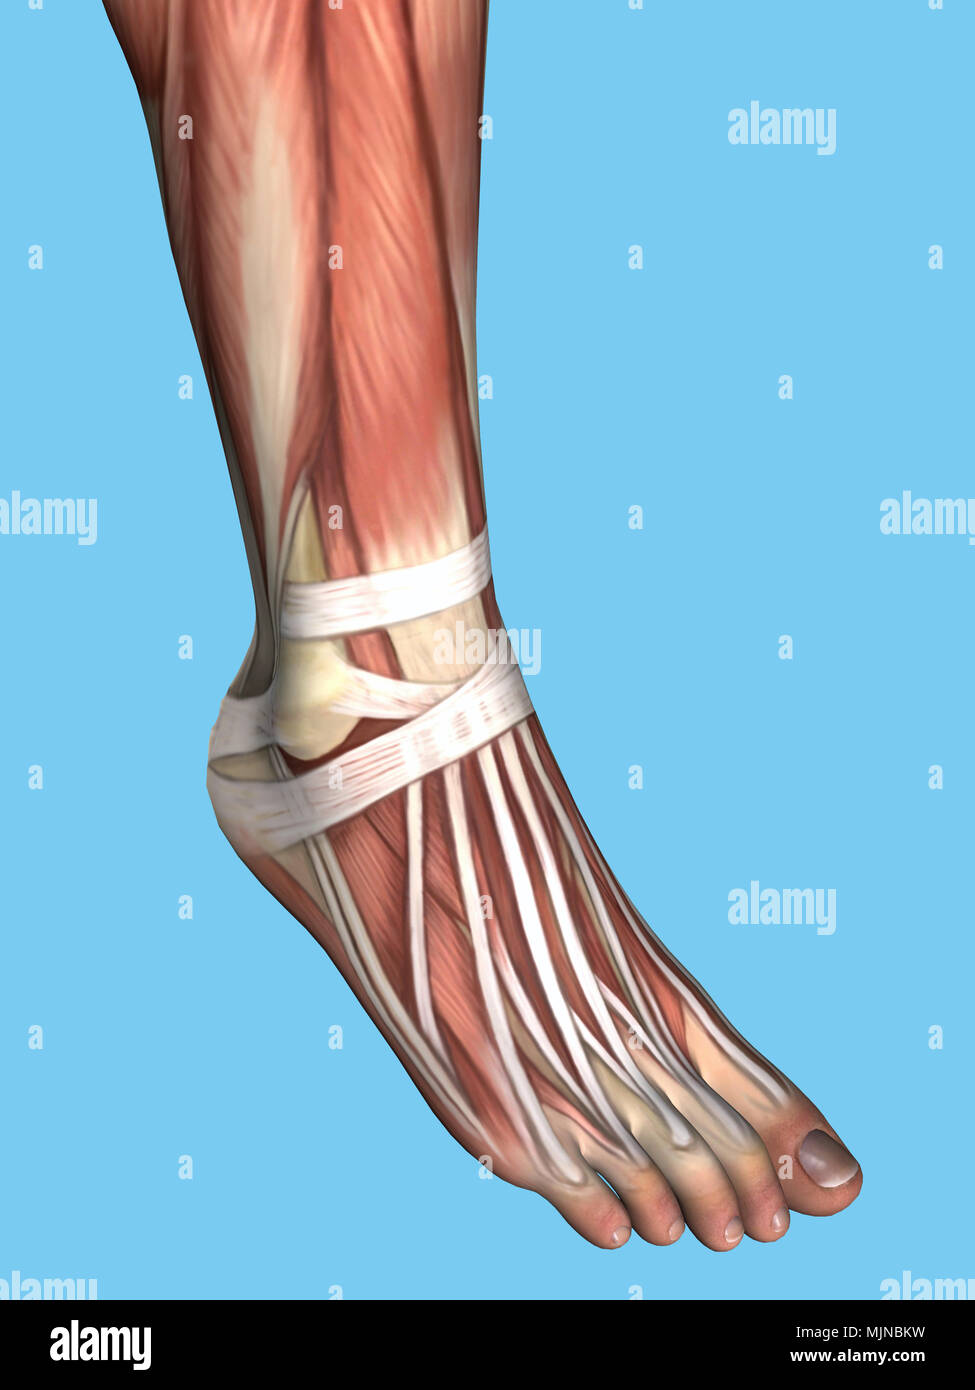 Anatomía del pie Foto de stock